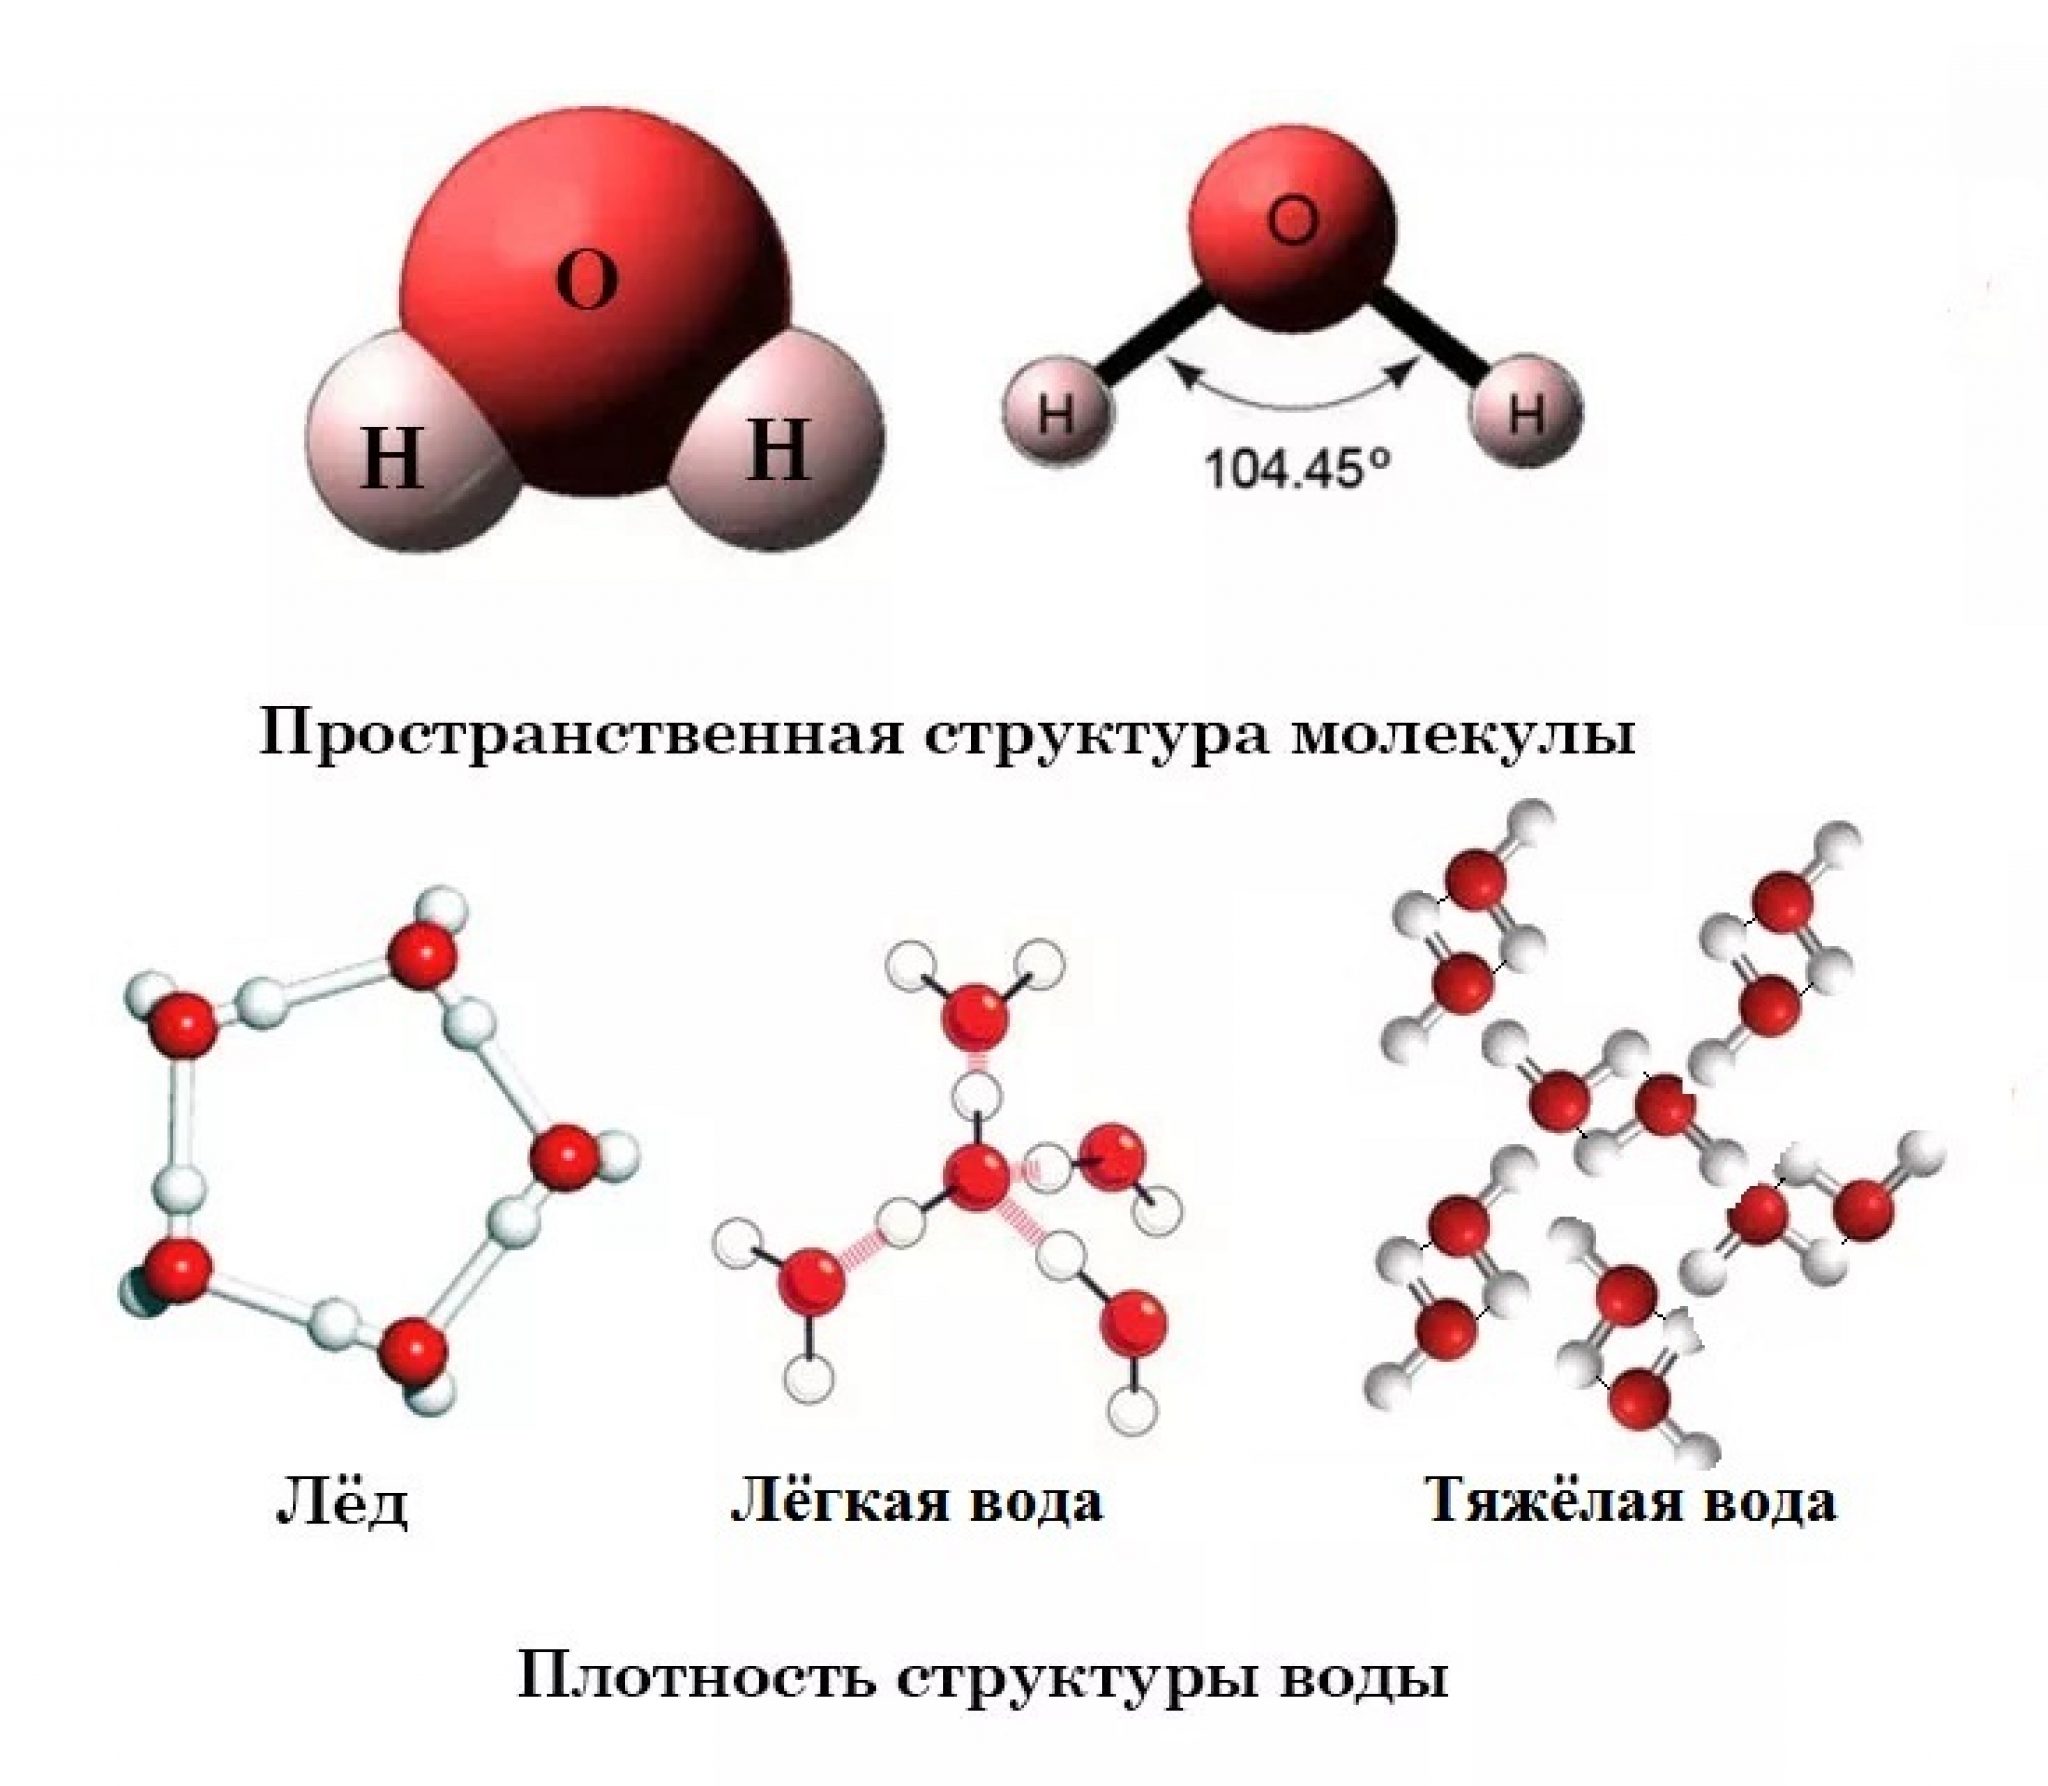 Химическая формула тяжелой воды. Структура молекулы воды. Молекула тяжелой воды. Тяжелая вода. Молекула воды и льда